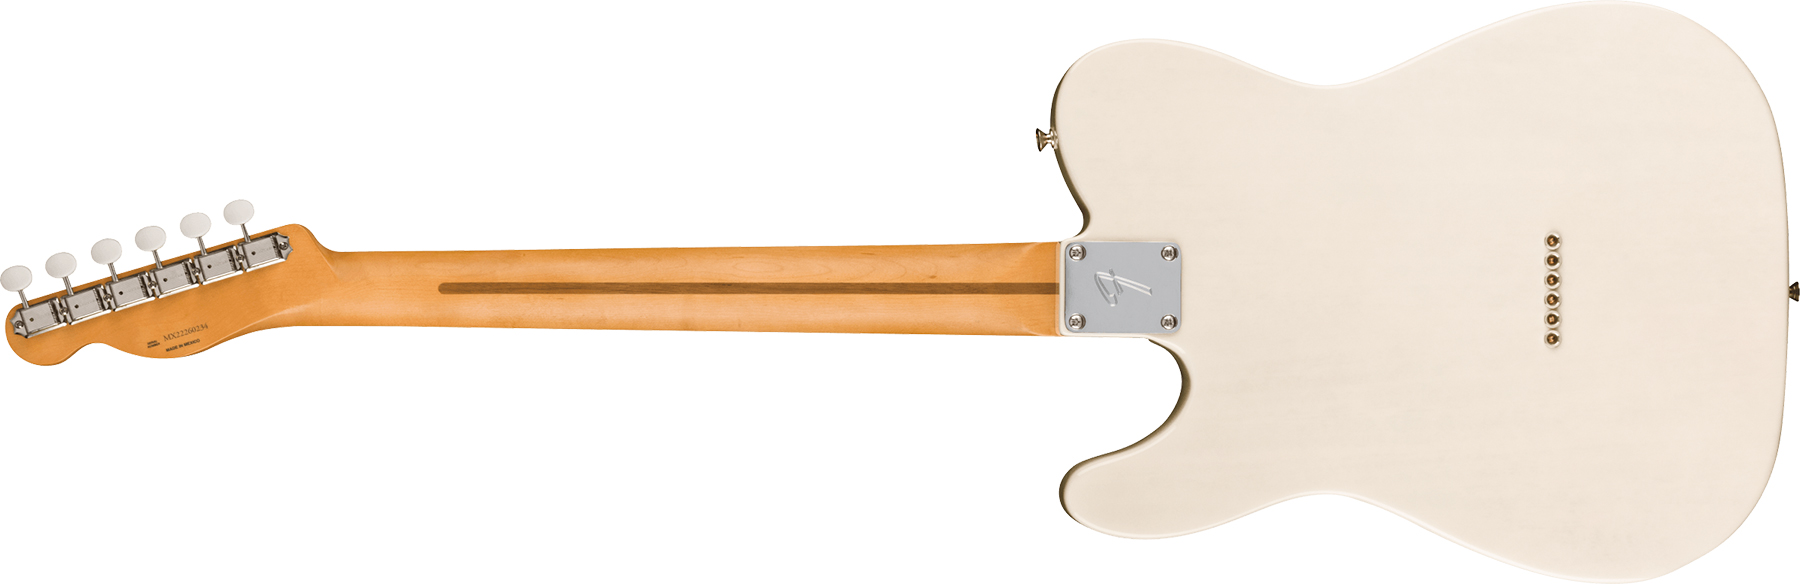 Fender Tele Gold Foil Ltd Mex 2mh Ht Eb - White Blonde - Guitarra eléctrica con forma de tel - Variation 1